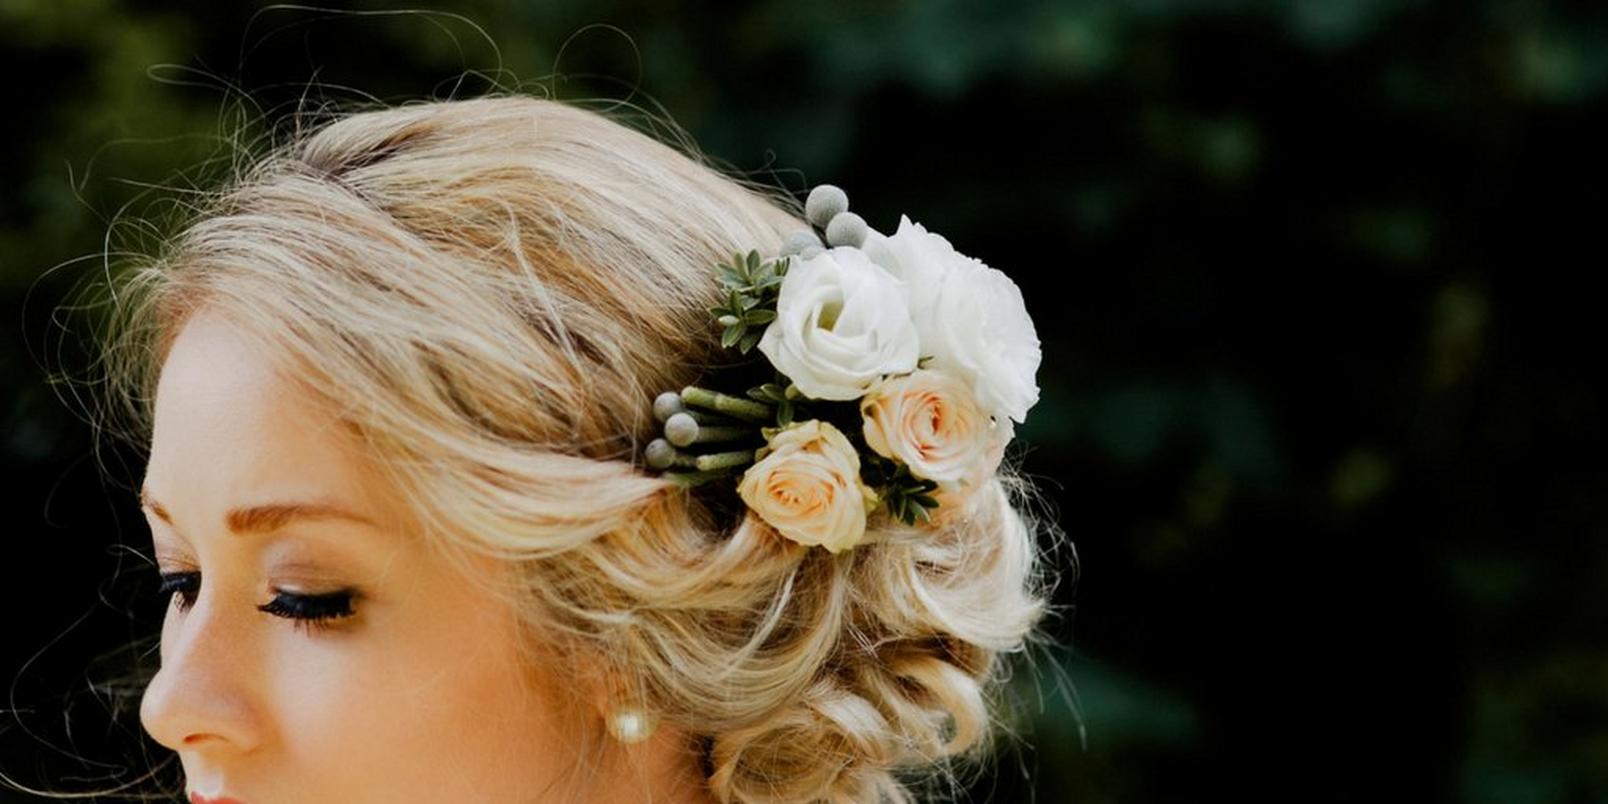 10 Stunning Ways to Wear Flowers in Your Hair | Interflora Ireland